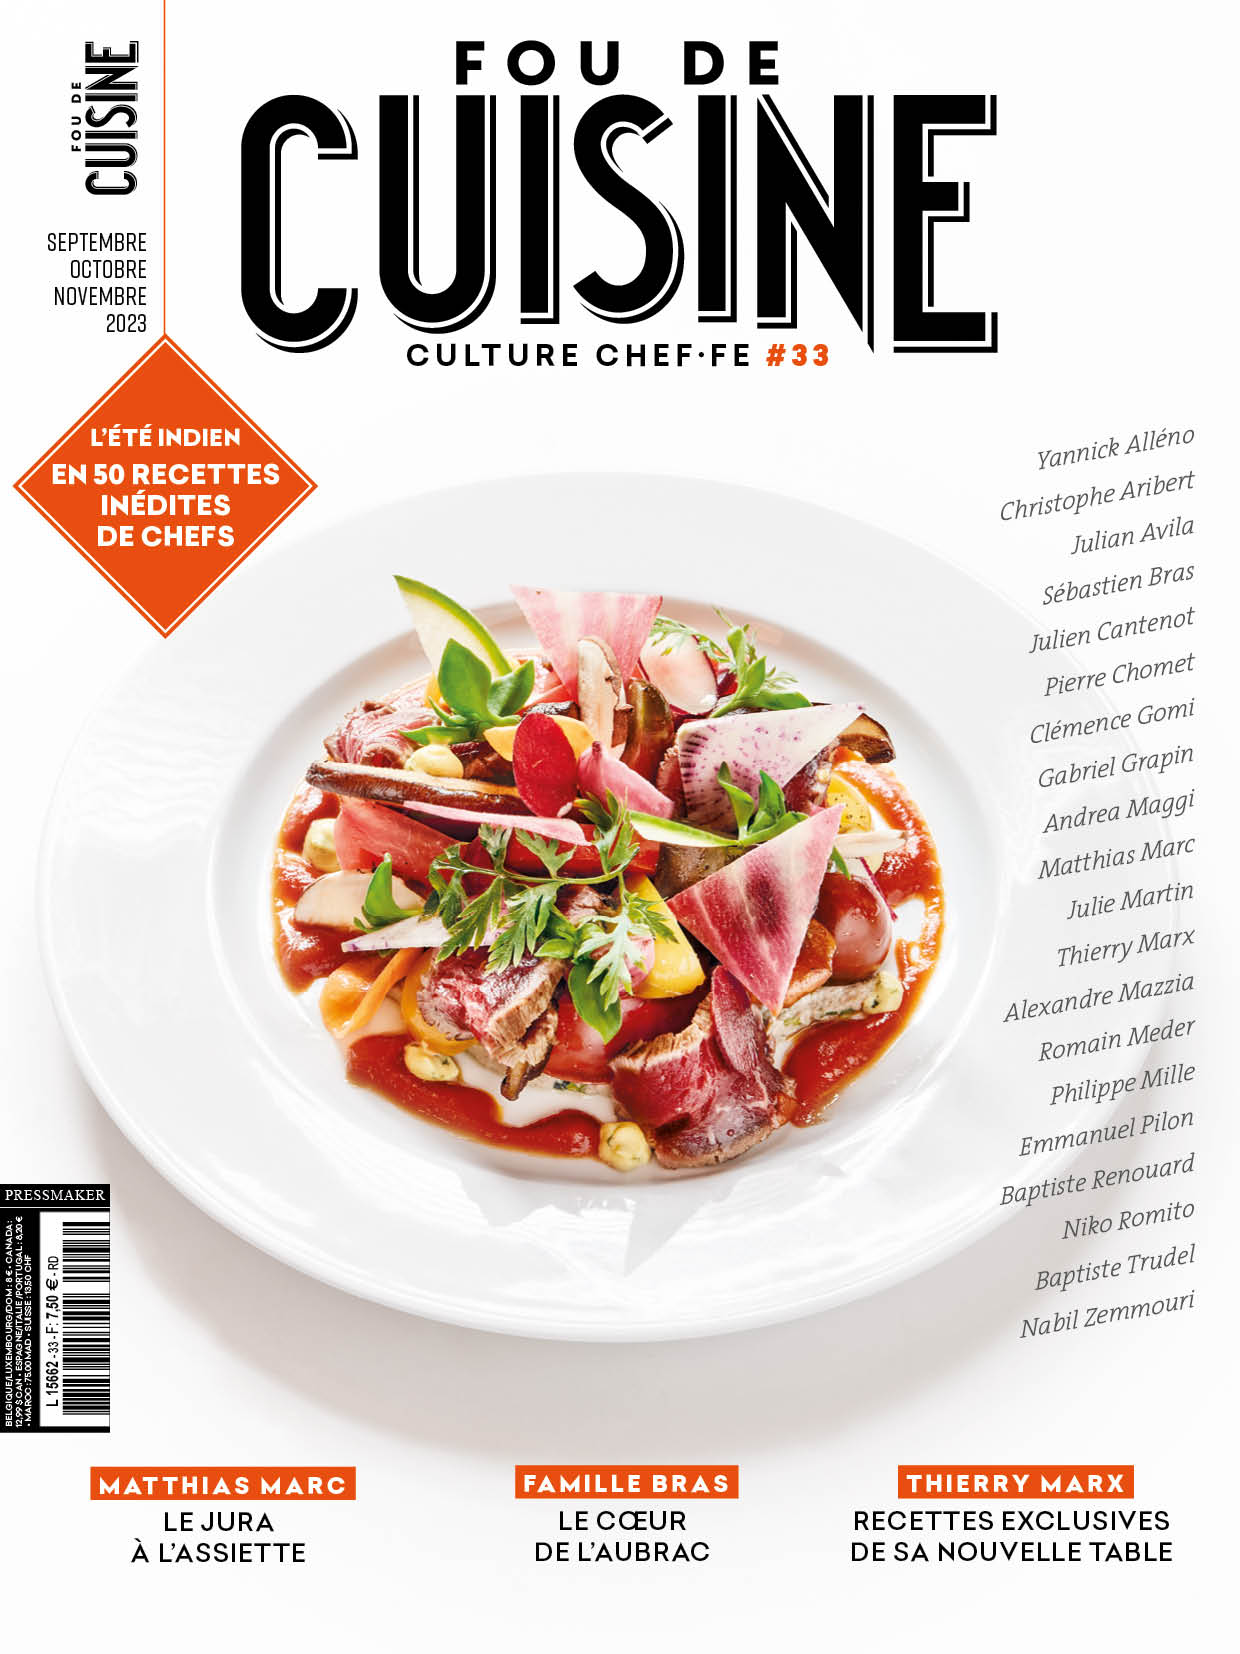 N°33 - Magazine Fou de cuisine (Sept/Oct/Nov)